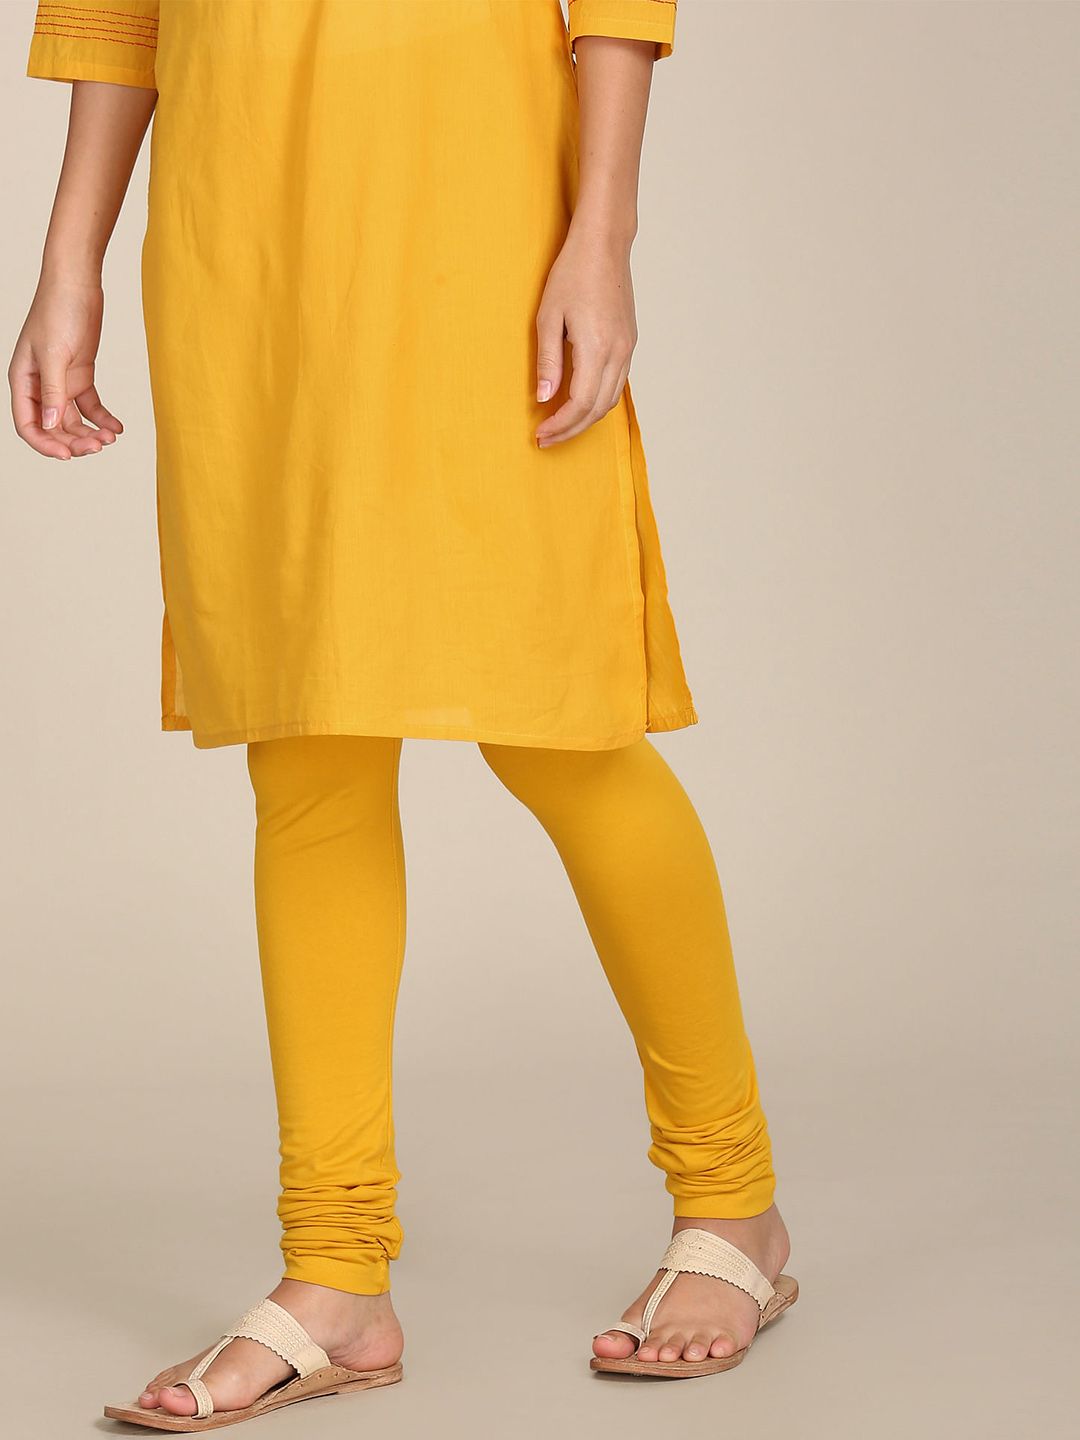 Karigari Mustard Yellow Churidar Leggings Price in India